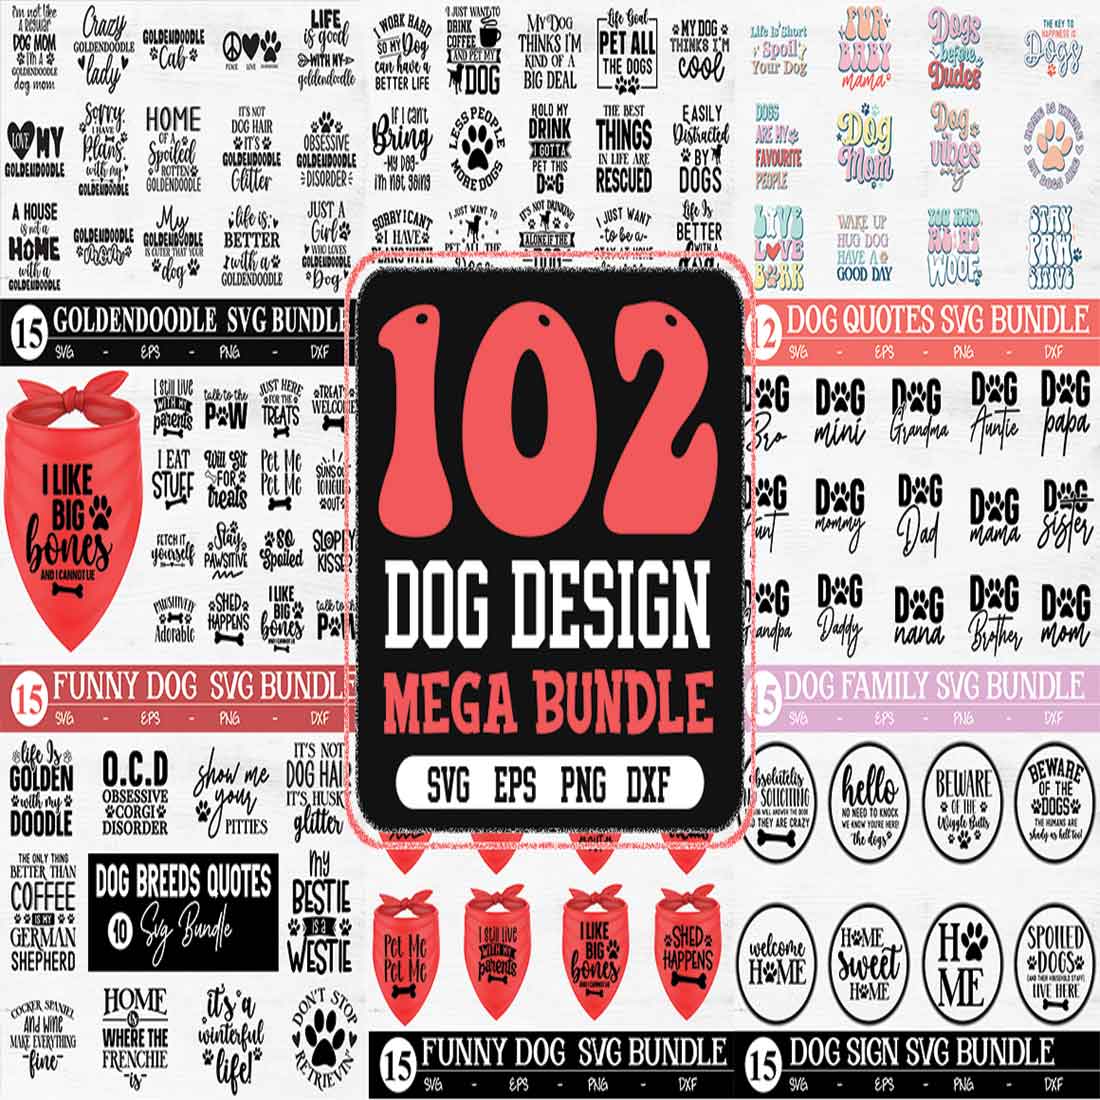 Mega Dog SVG Bundle 102 file preview image.